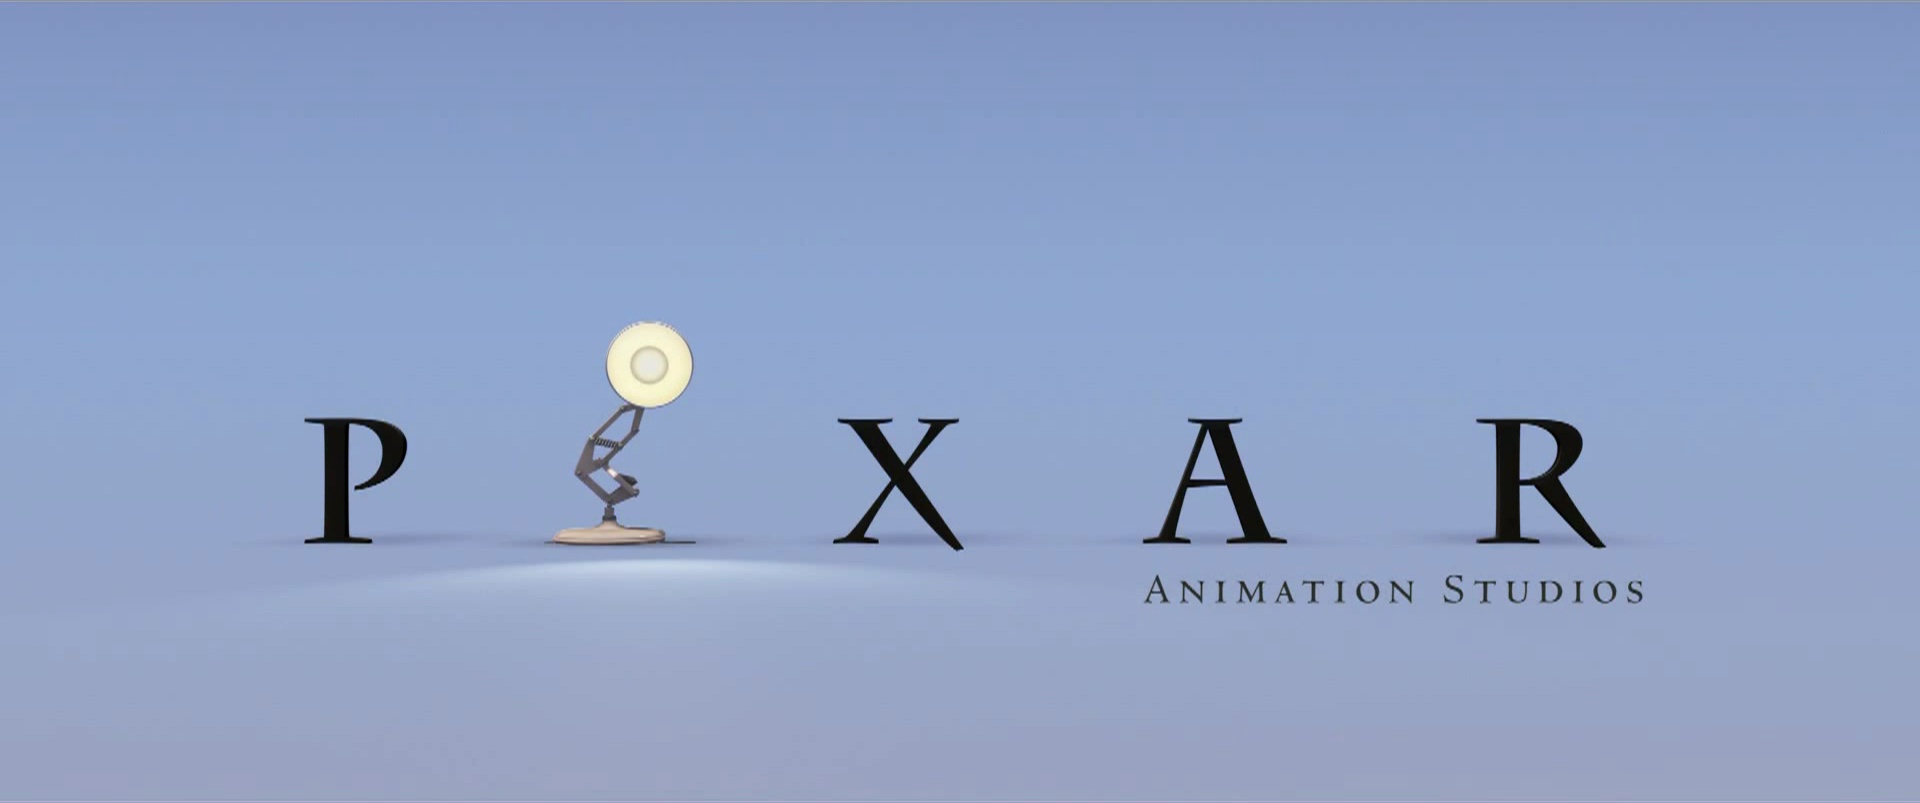 Resultado de imagem para pixar animation studios